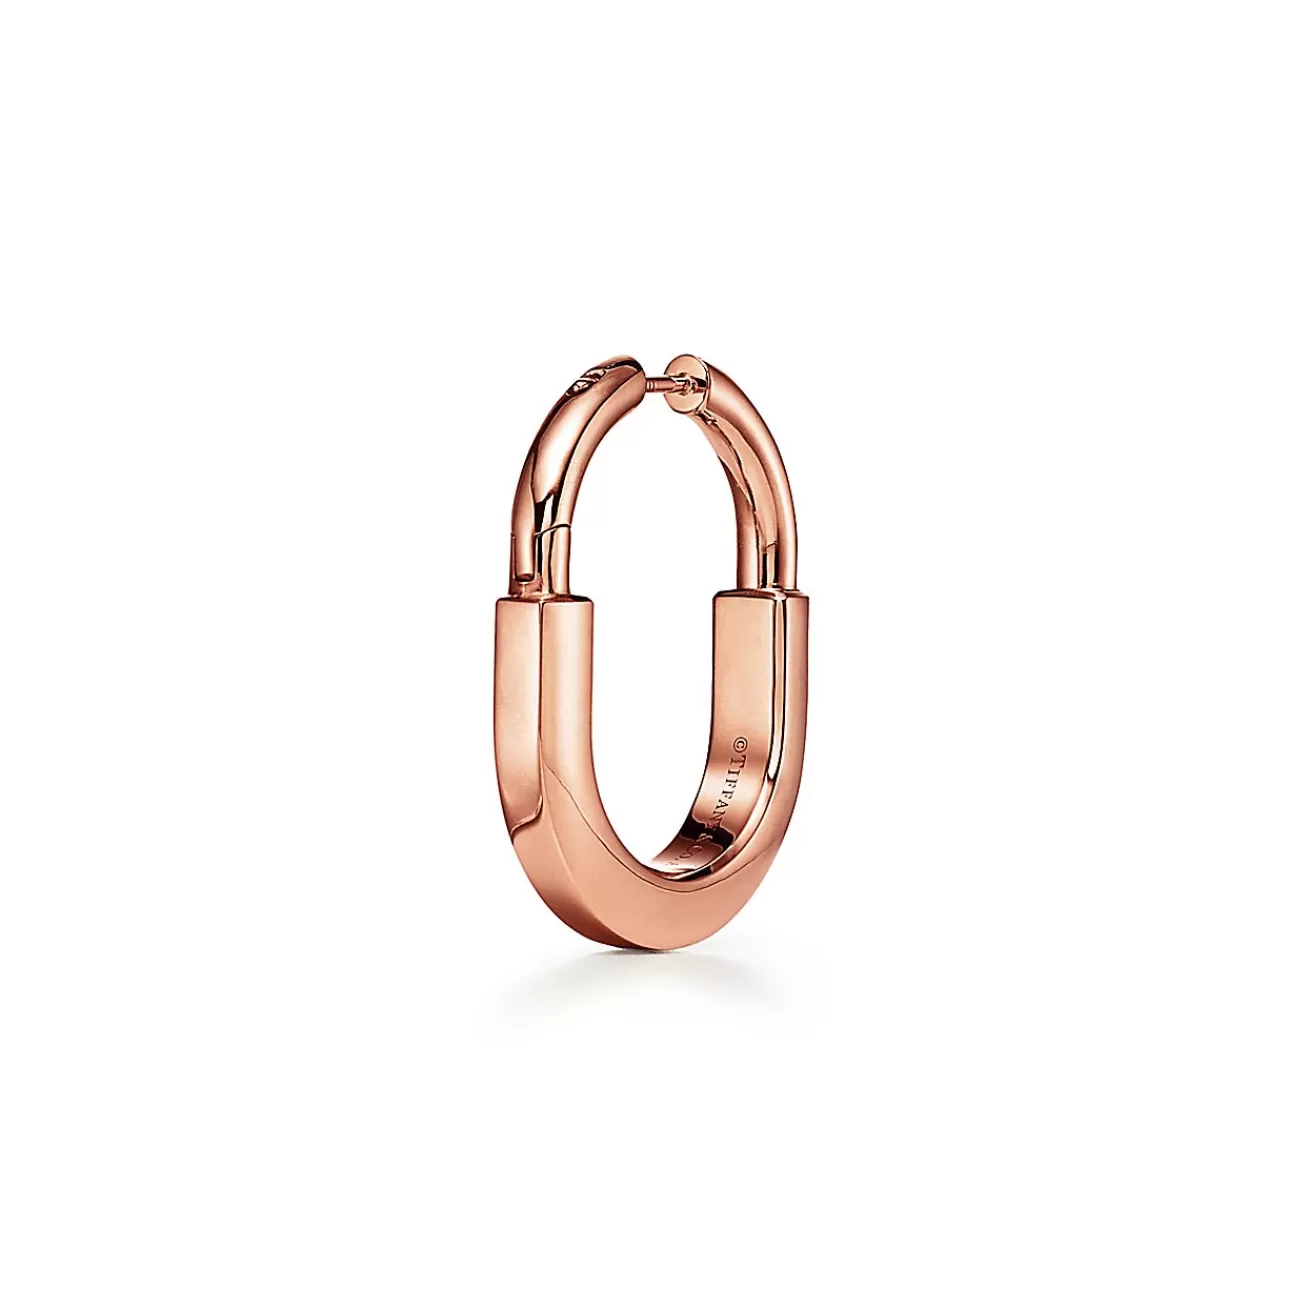 Tiffany & Co. Tiffany Lock Earrings in Rose Gold with Diamonds, Medium | ^ Earrings | Hoop Earrings